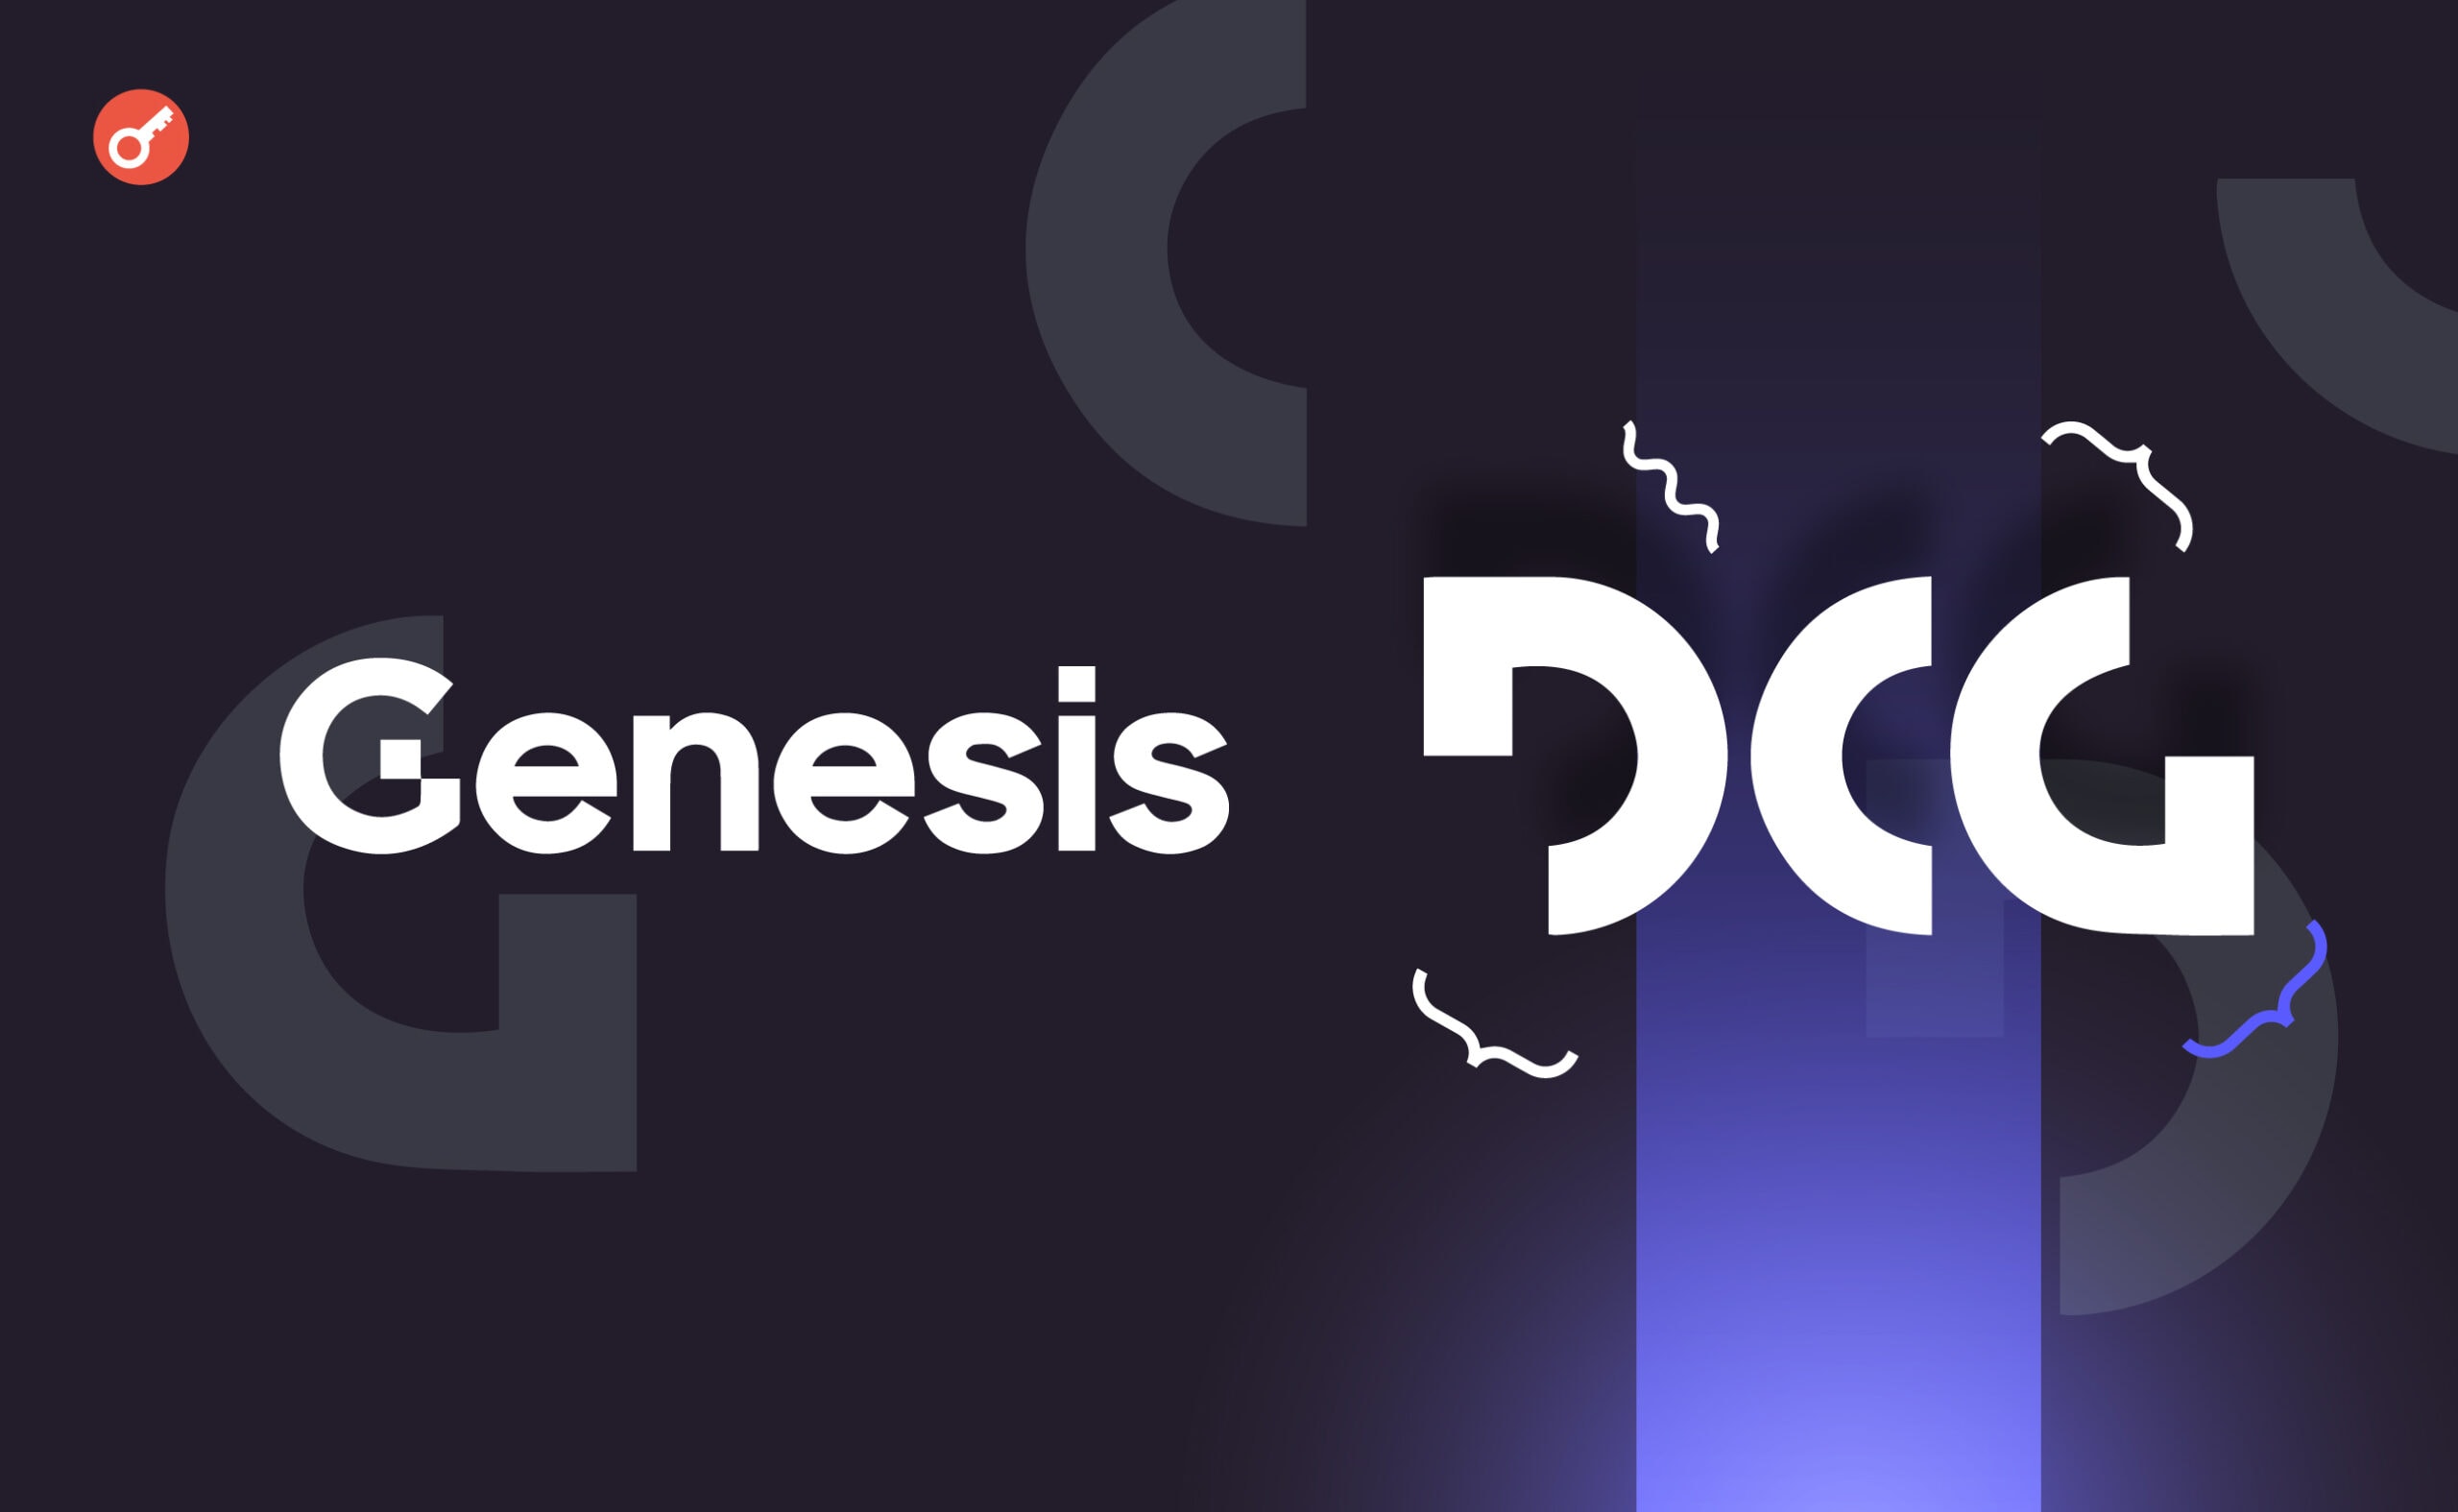 Genesis подала в суд на DCG из-за $600 млн задолженности. Заглавный коллаж новости.